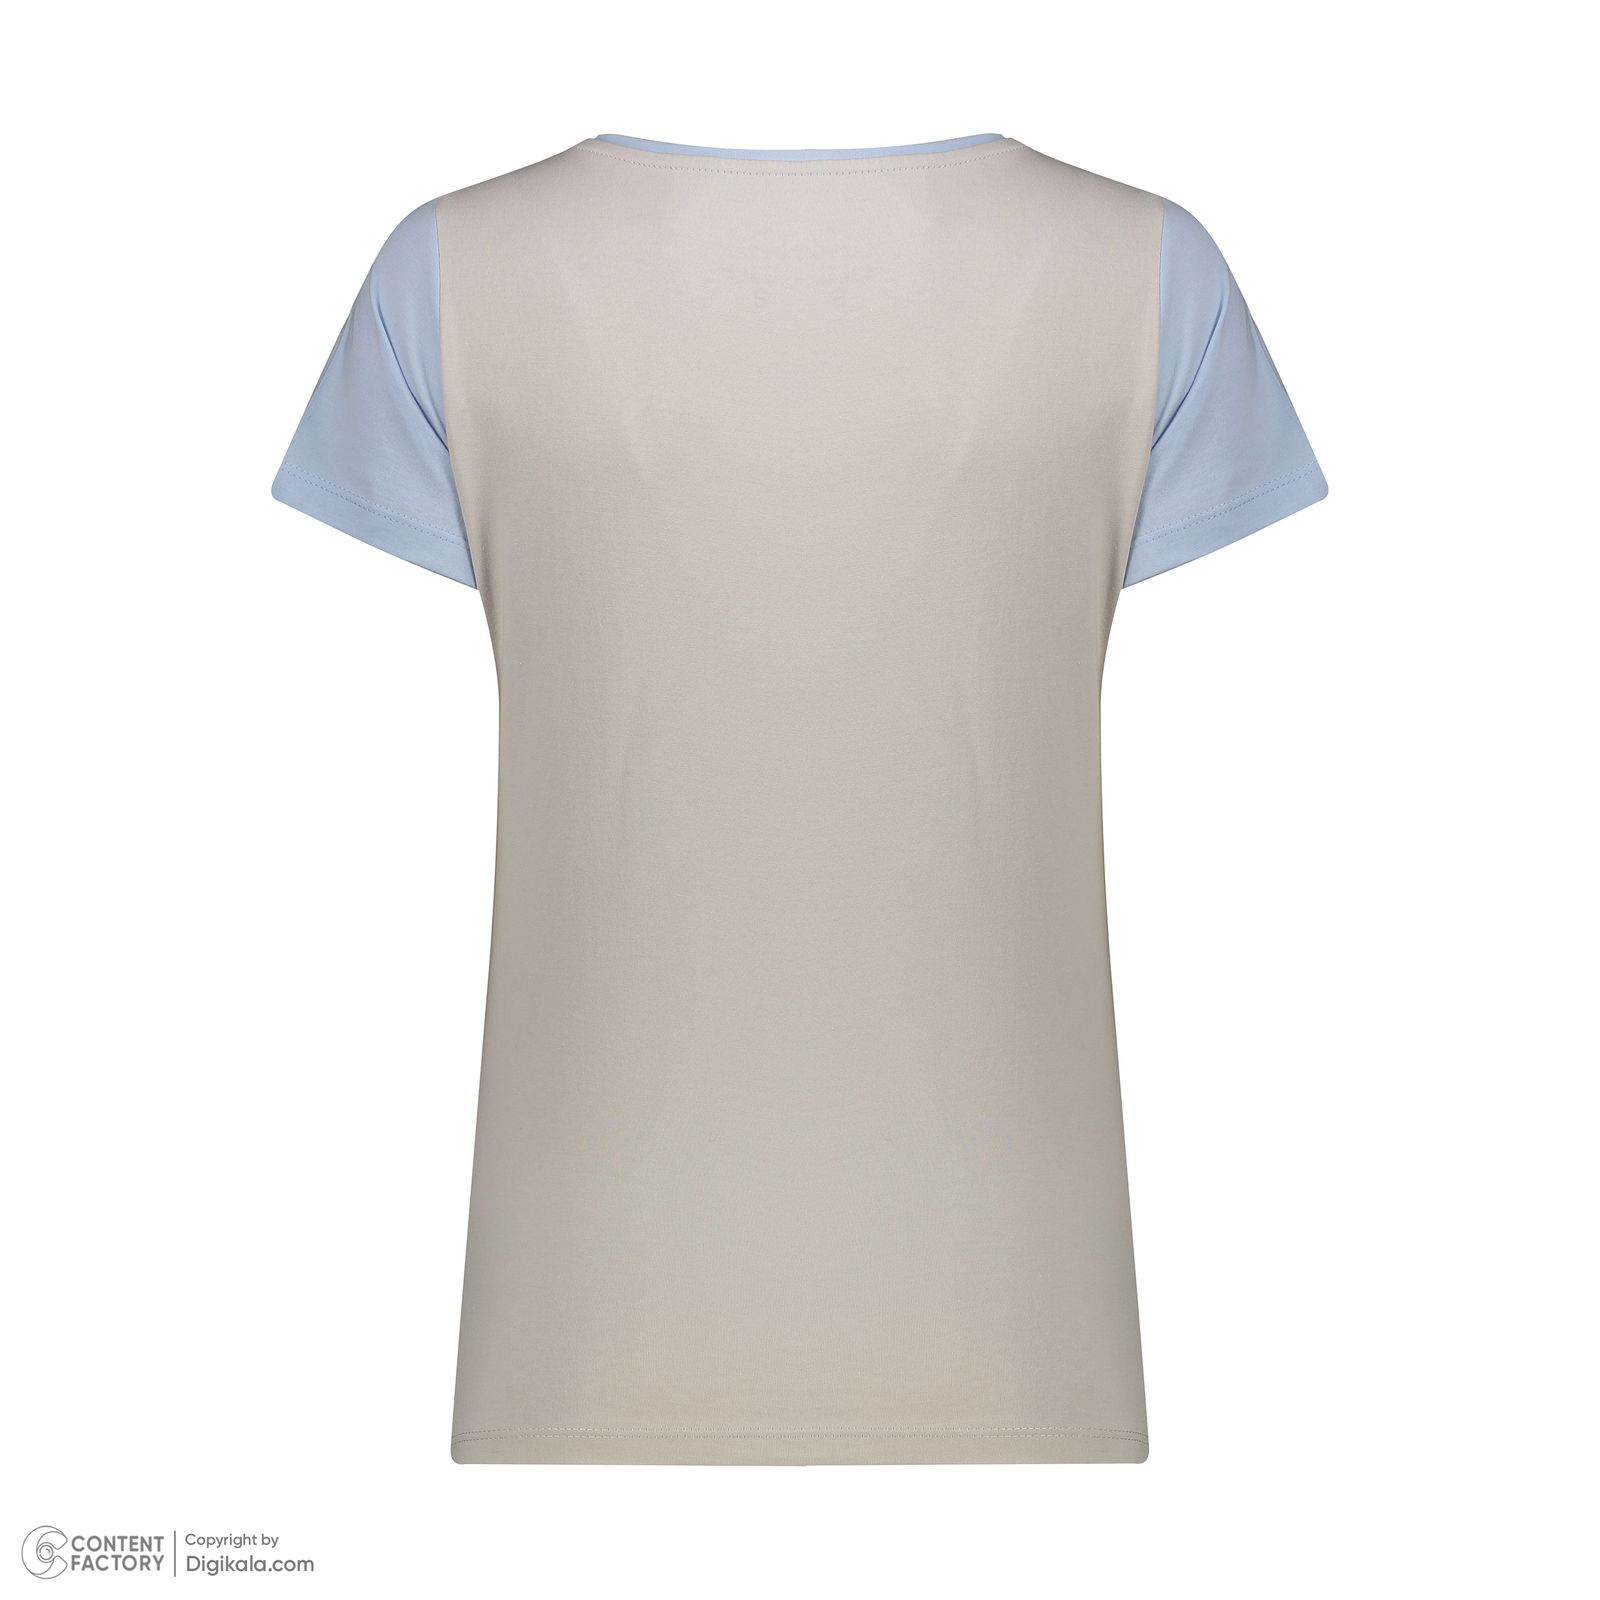 ست تی شرت آستین کوتاه و شلوار زنانه ناربن مدل 1521952 رنگ طوسی روشن -  - 11